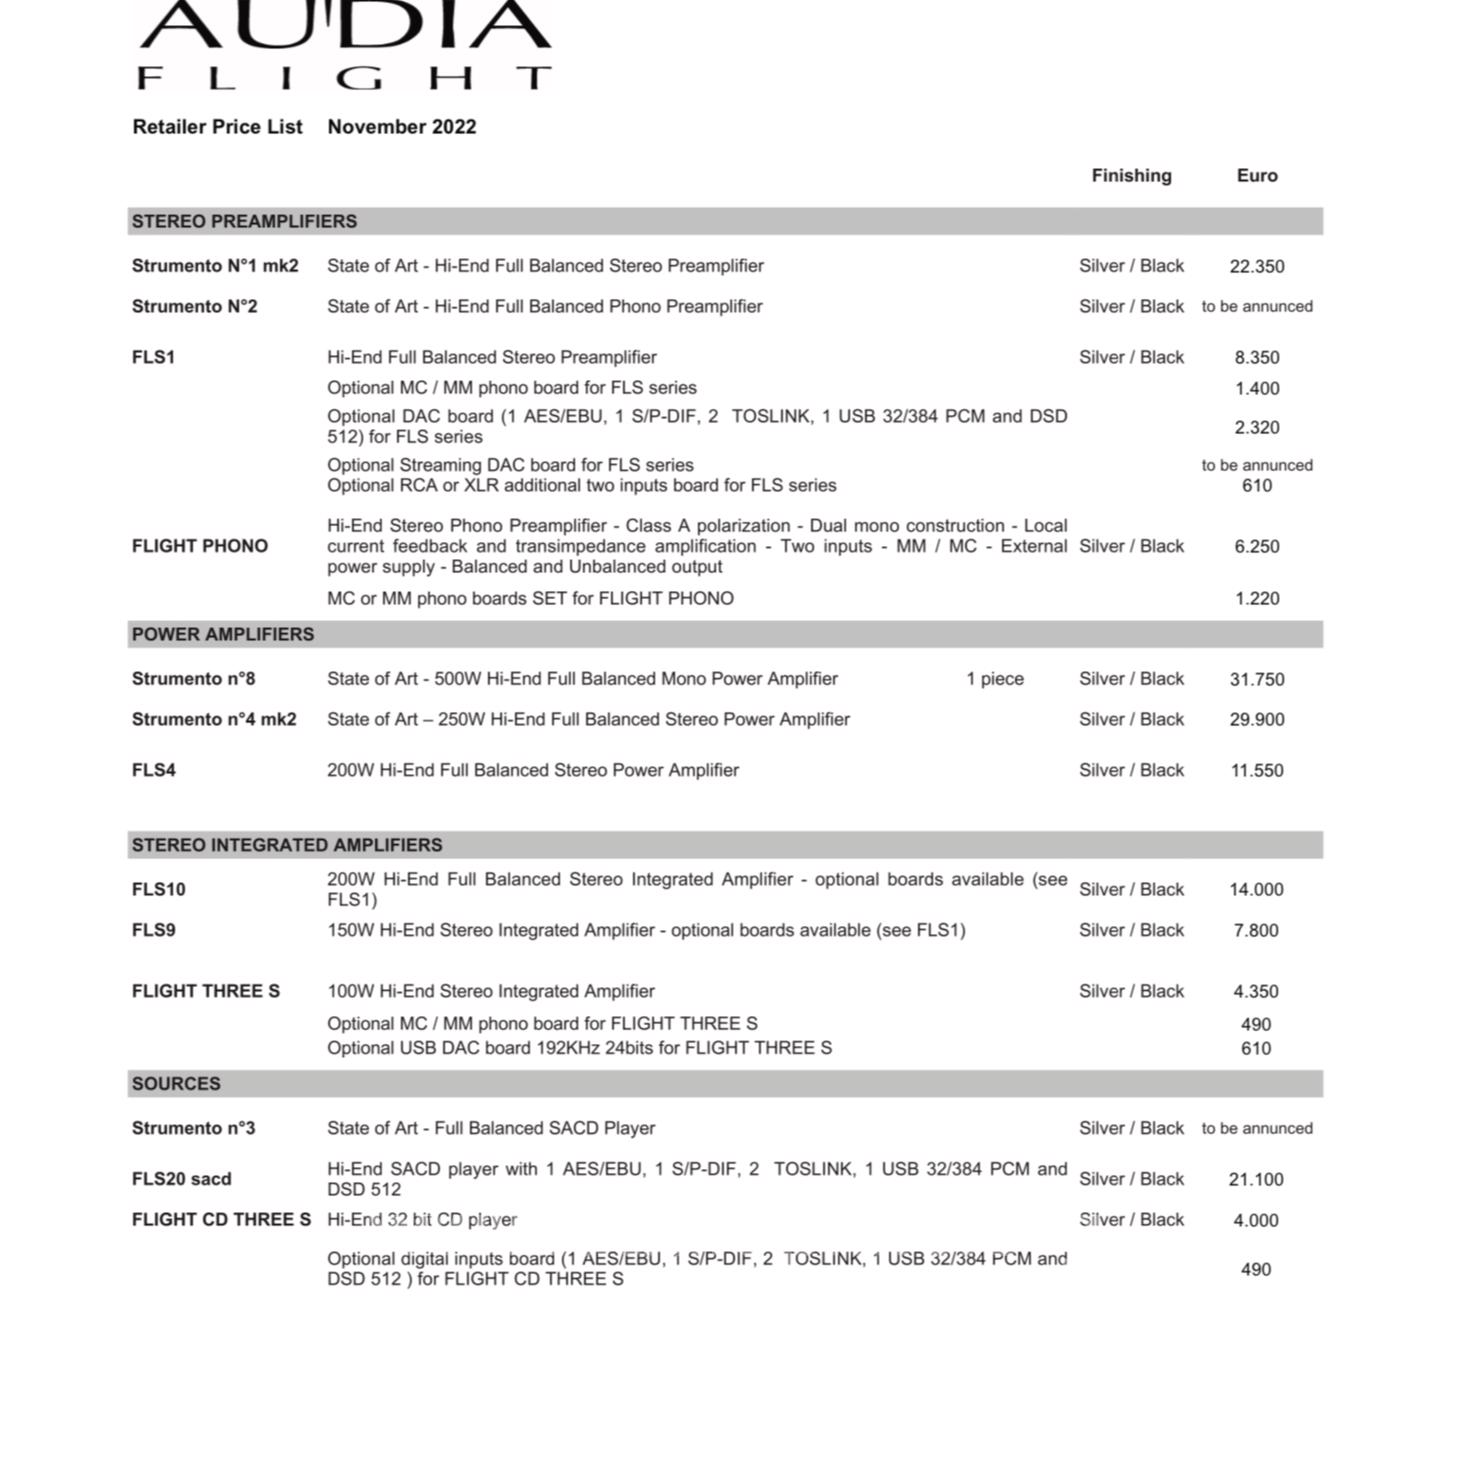 Audia flight fls 9 + mc/mm board